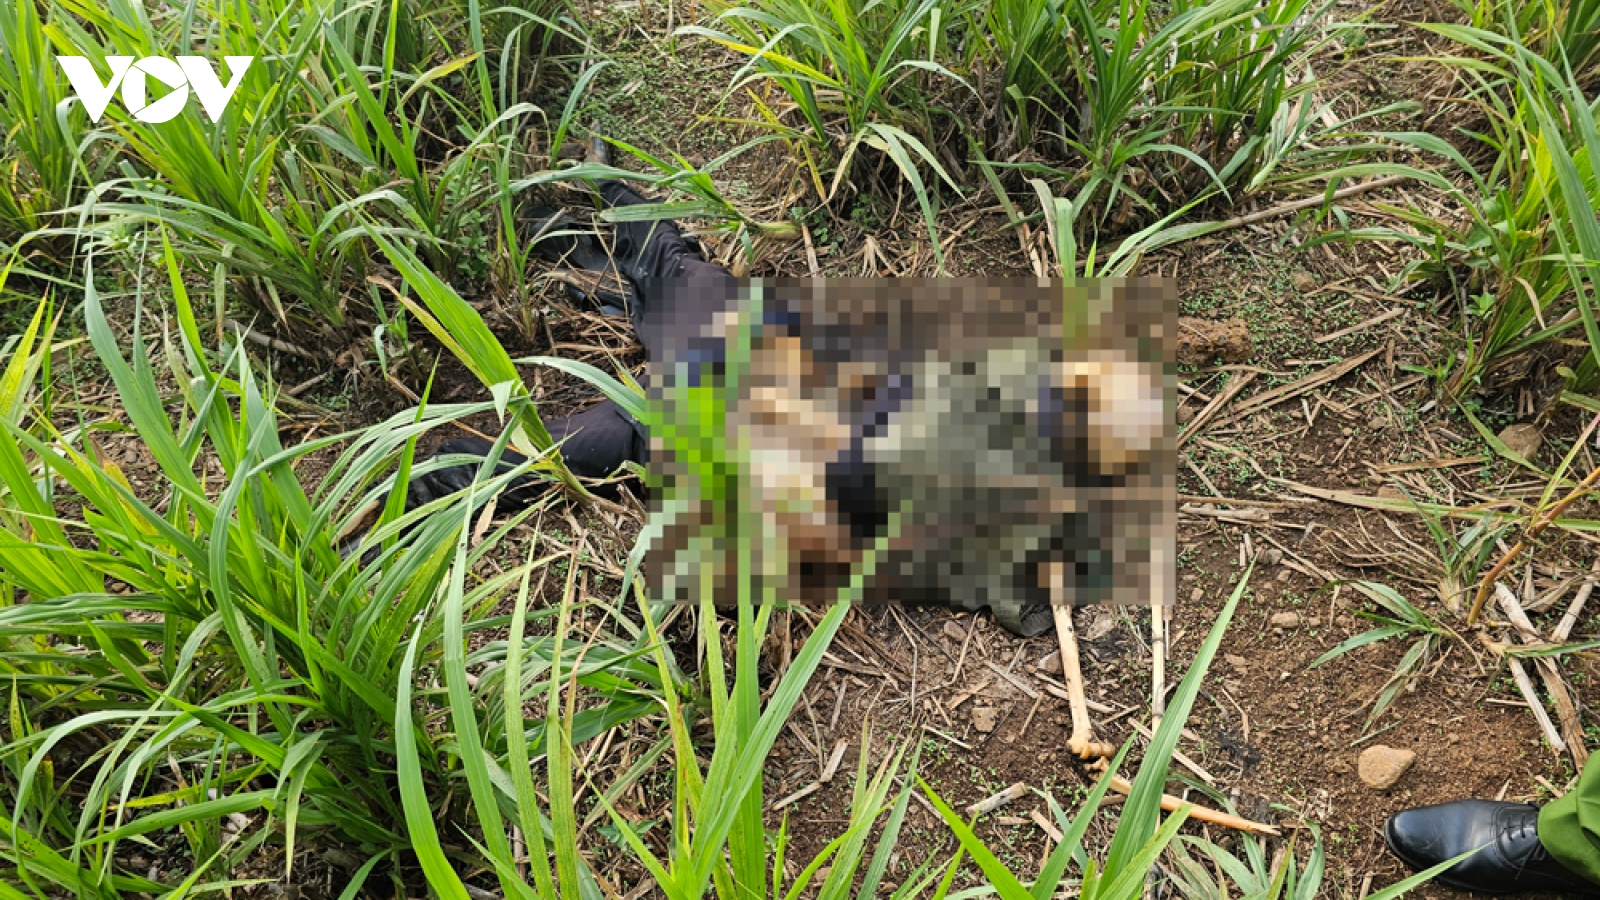 Phát hiện thi thể không nguyên vẹn trong bụi cỏ tại Bình Phước